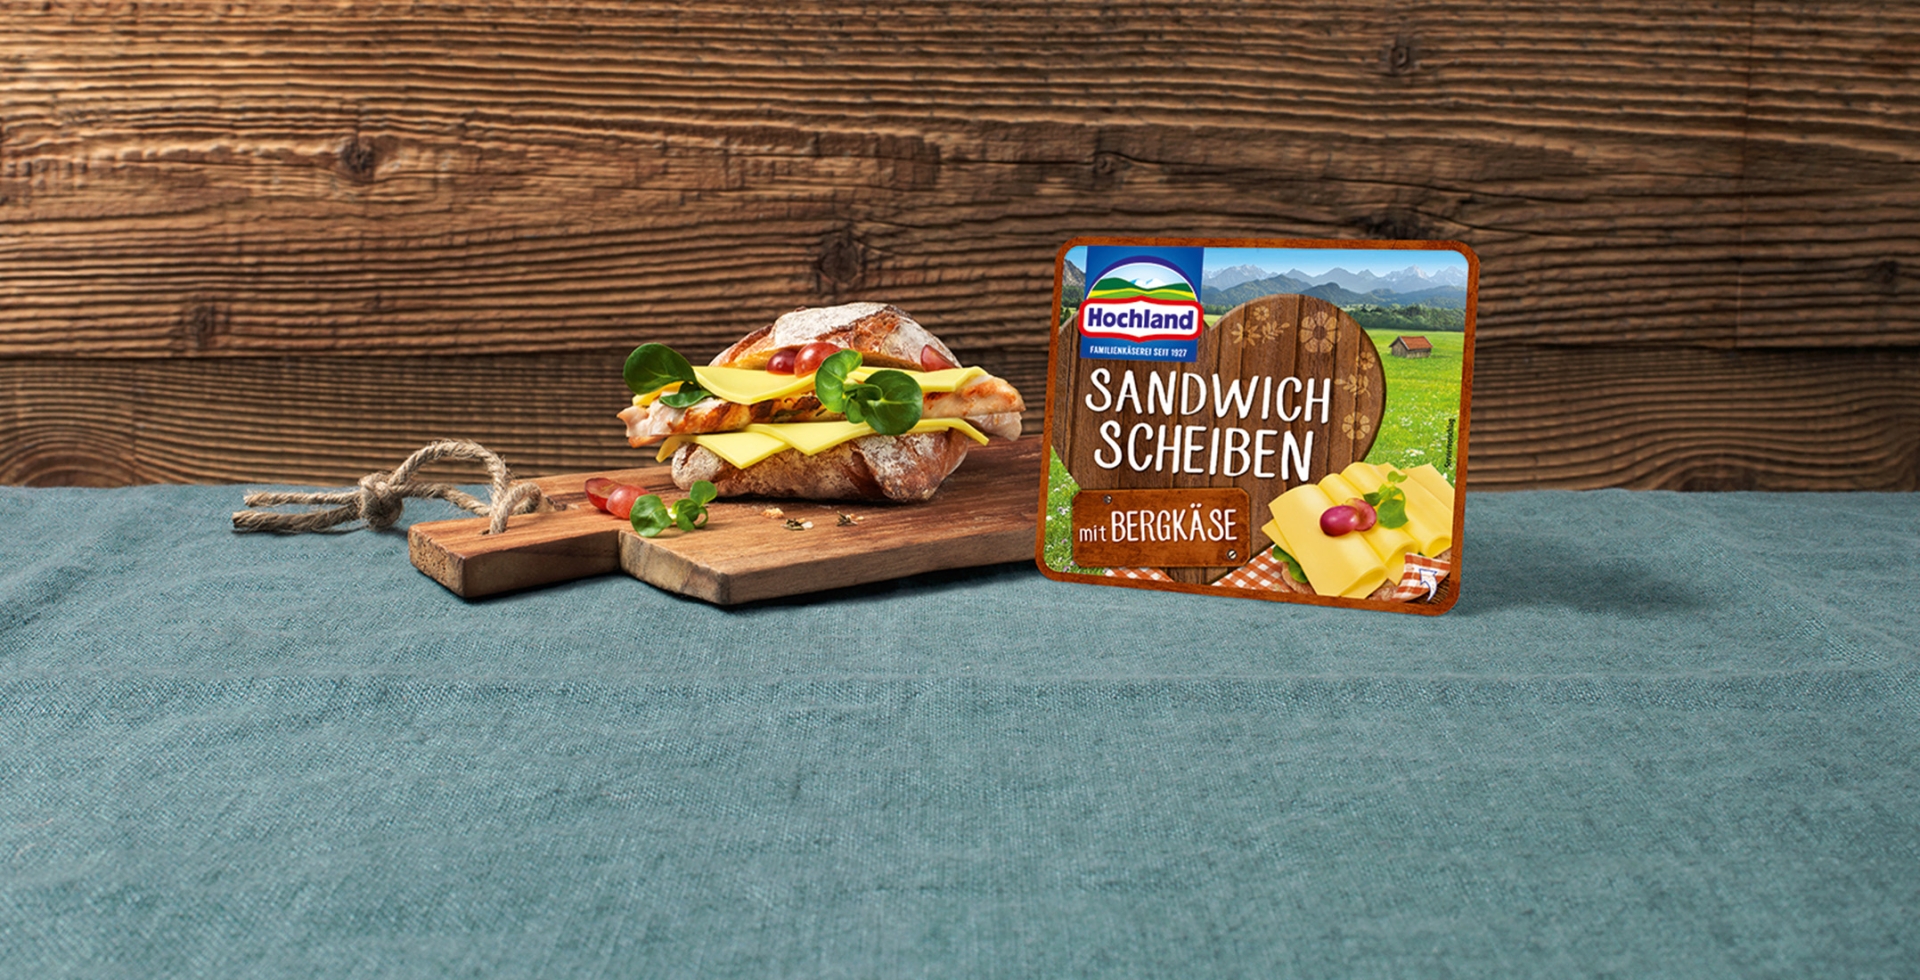 Sandwich-Scheiben Bergkaese